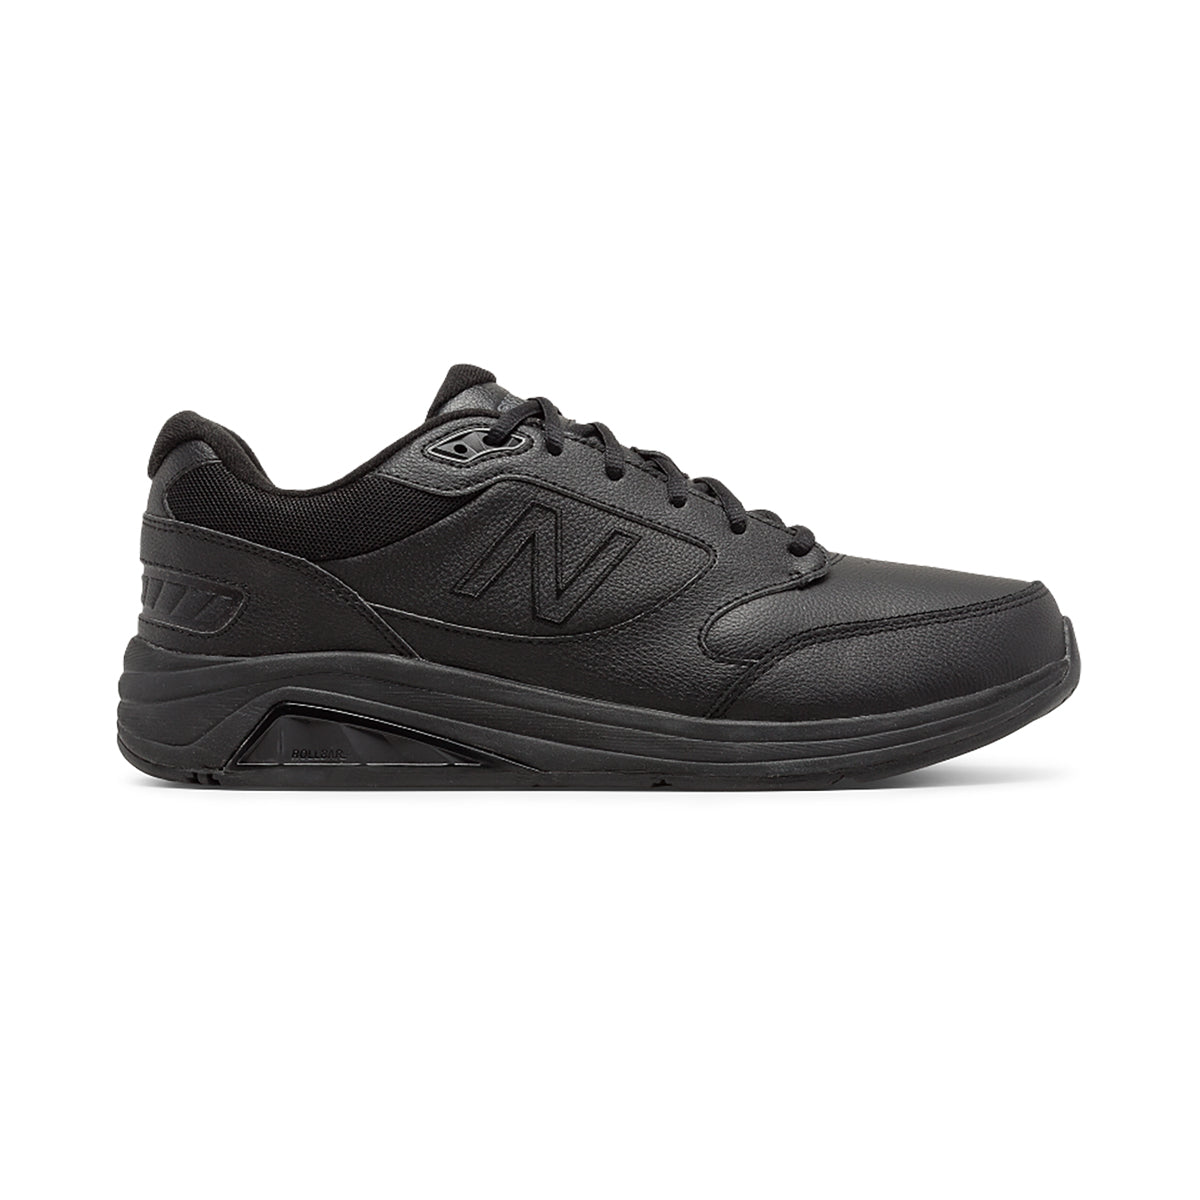 Men's Leather 928 v3 Walking Shoes - Black - Regular (D)